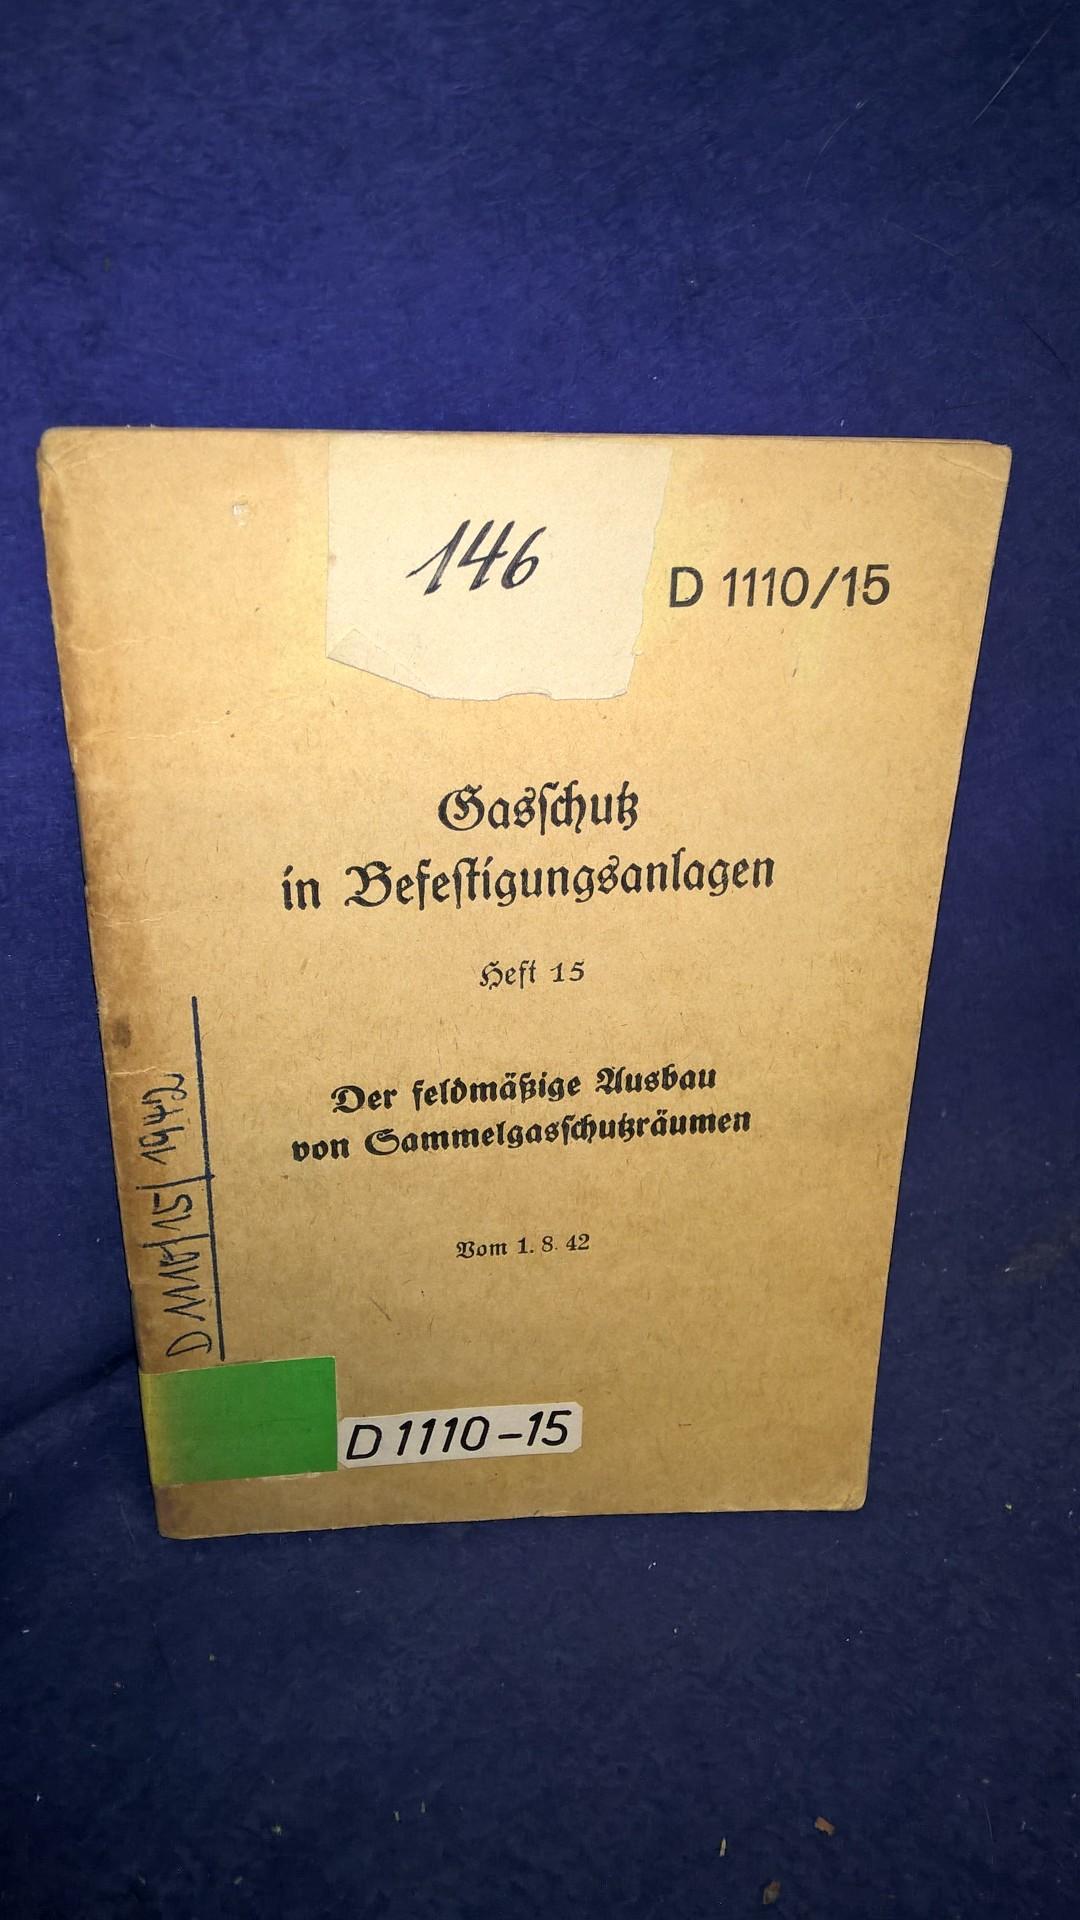 D 1110/15. Gasschutz in Befestigungsanlagen. Heft 15: Der feldmäßige Ausbau von Gasschutzsammelräumen. Orginale Vorschrift vom 1.8.1942!